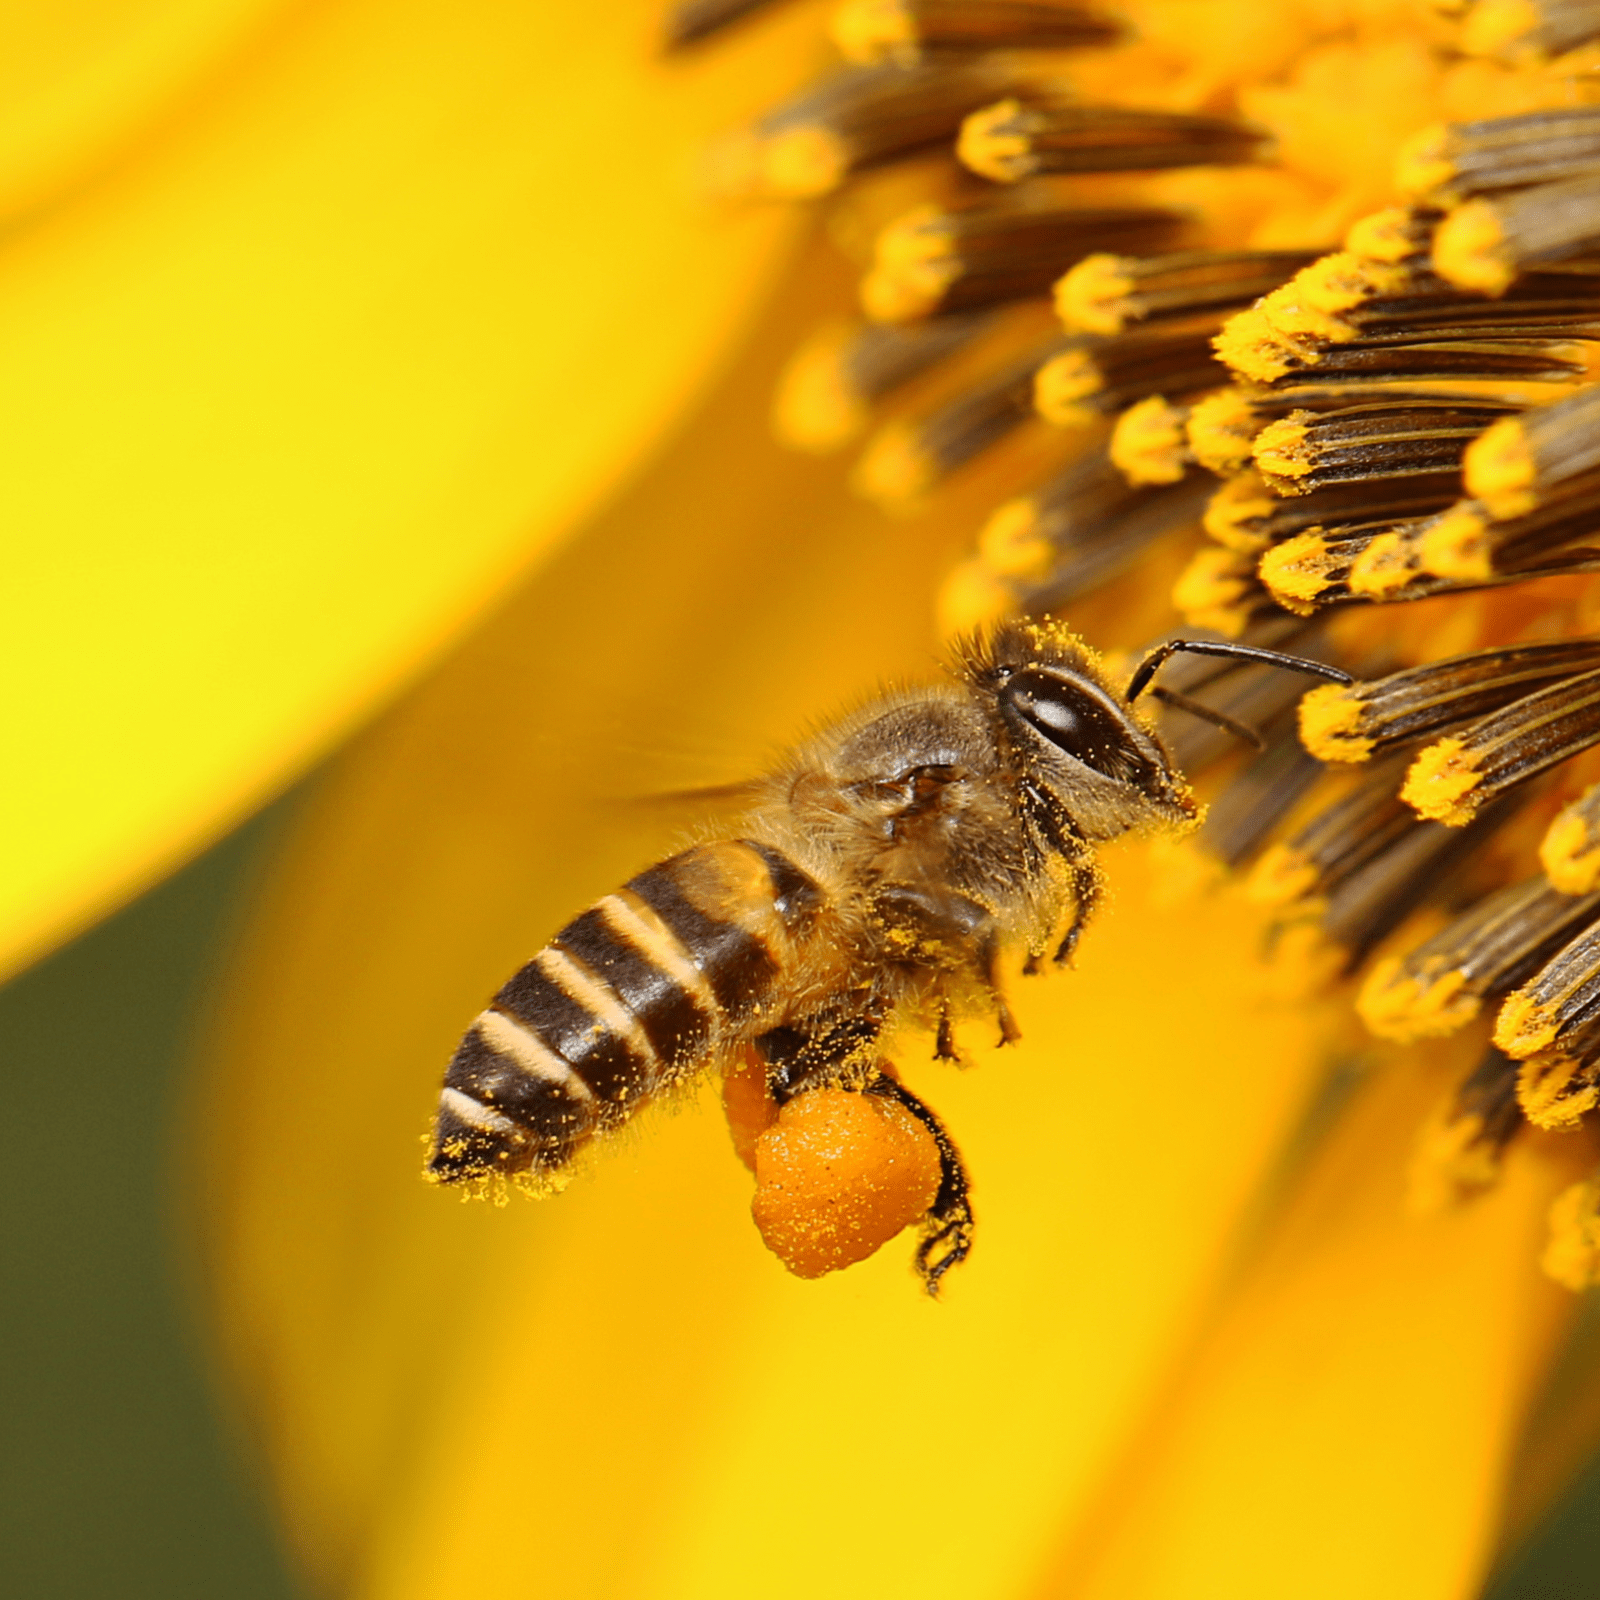 Polen de abeja: propiedades, beneficios y cómo tomarlo